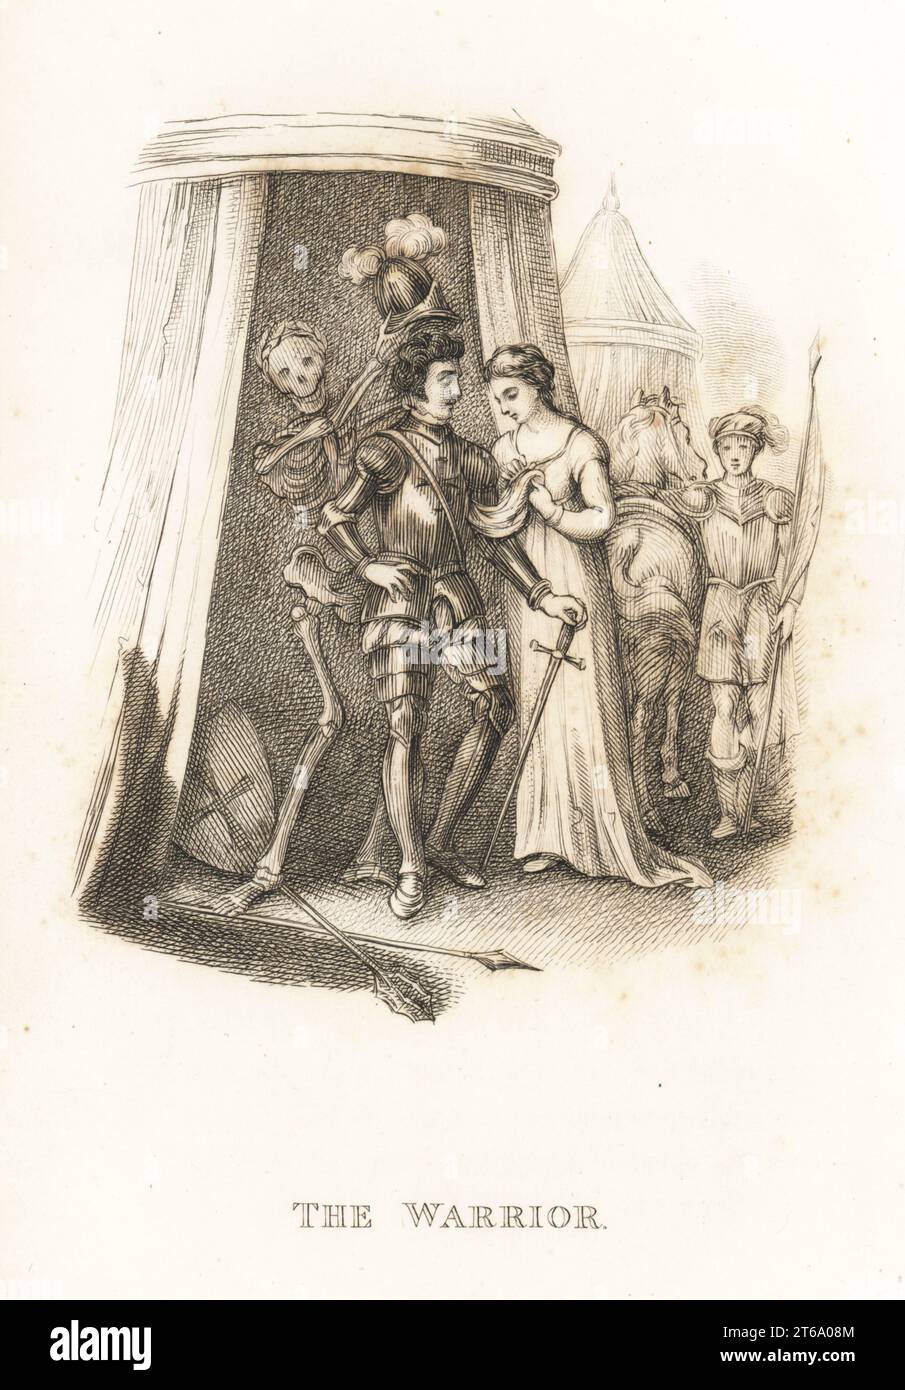 Lo scheletro della morte e il guerriero. La morte aiuta il cavaliere a mettersi sul suo timone prima di una tourney. Il cavaliere indossa un'armatura completa e tiene una spada. Si trova di fronte a una tenda e una signora gli offre un fazzoletto. Illustrazione disegnata e incisa su acciaio da Richard Dagley dalle sue azioni di morte, consistenti in numerose composizioni originali in versi e prosa, J. Andrews, Londra, 1827. Dagley (1761-1841) è stato un pittore, illustratore e incisore inglese. Foto Stock